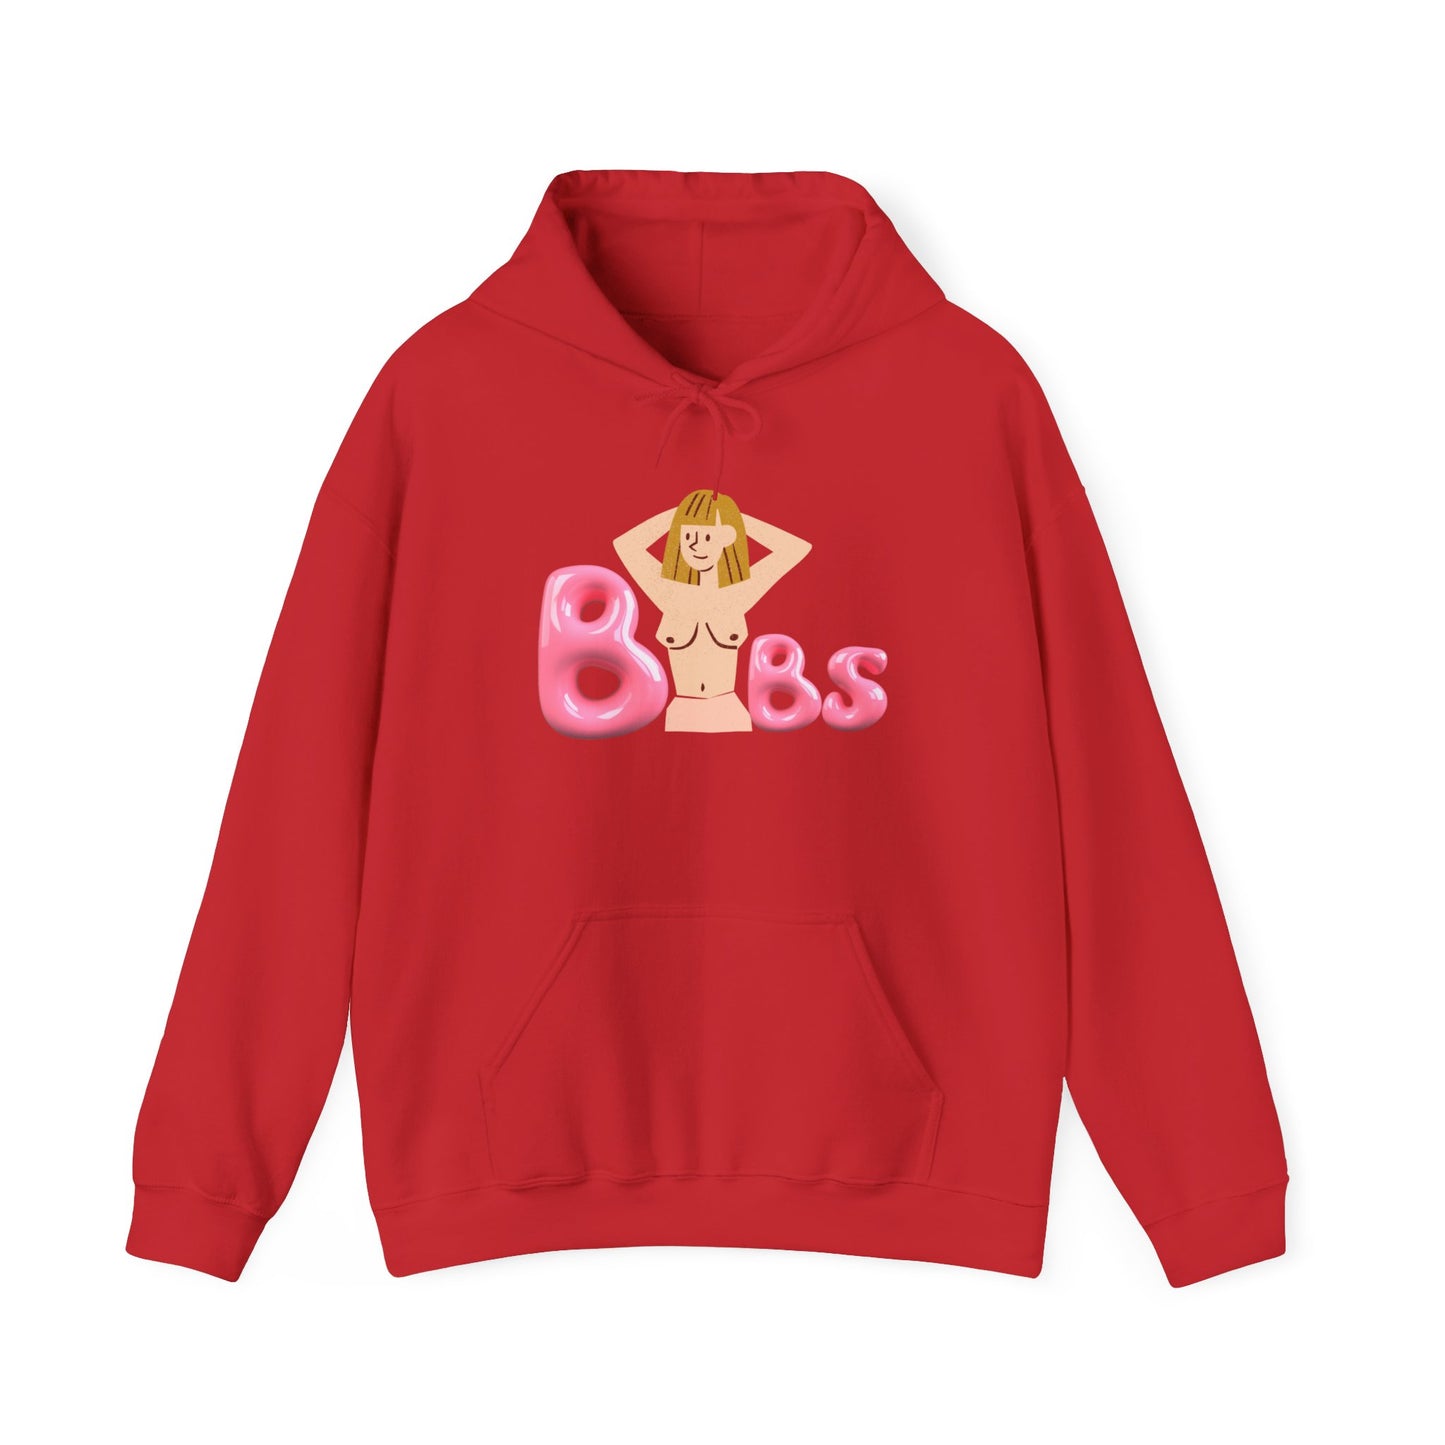 "Buubs" Hooded Sweatshirt II